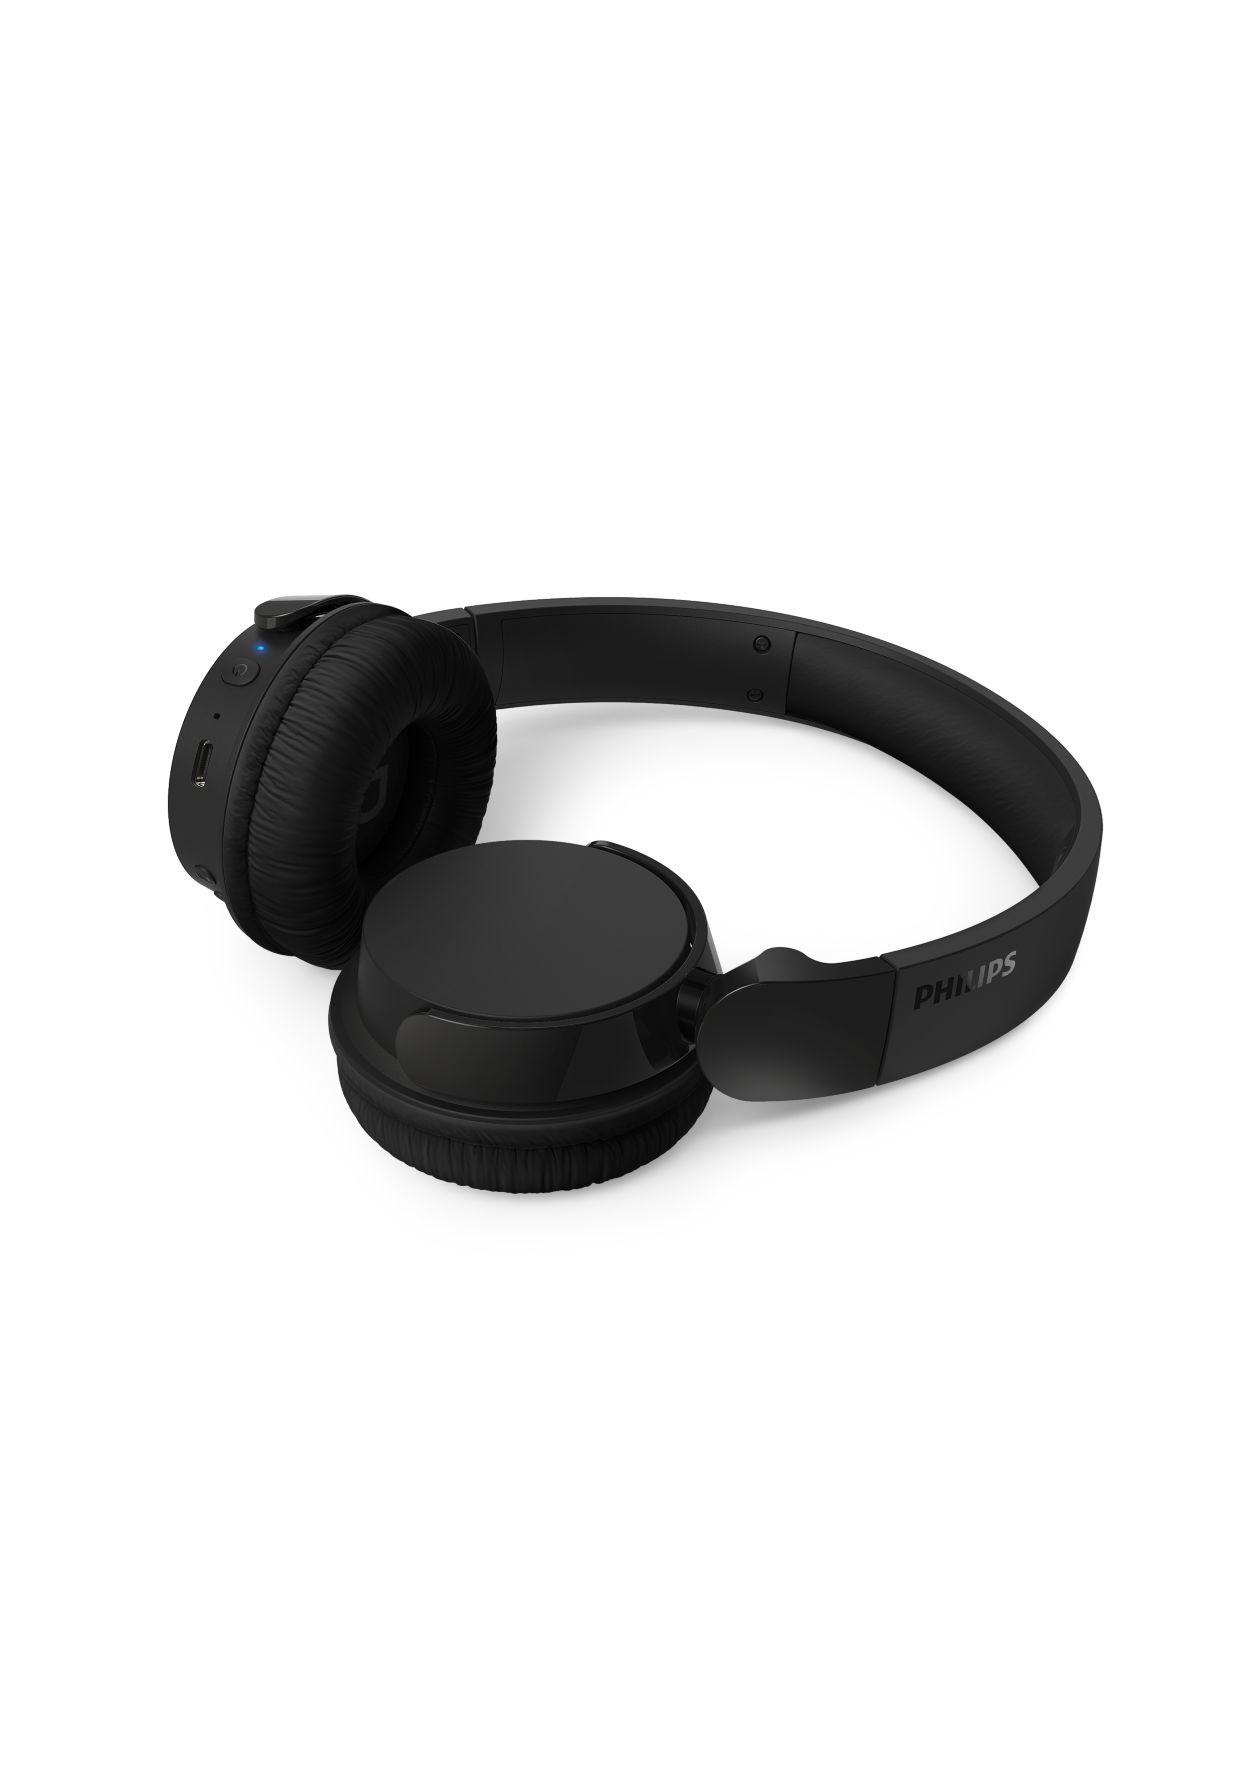 4000 series On-ear wireless headphones TAH4209BK/00 | Philips